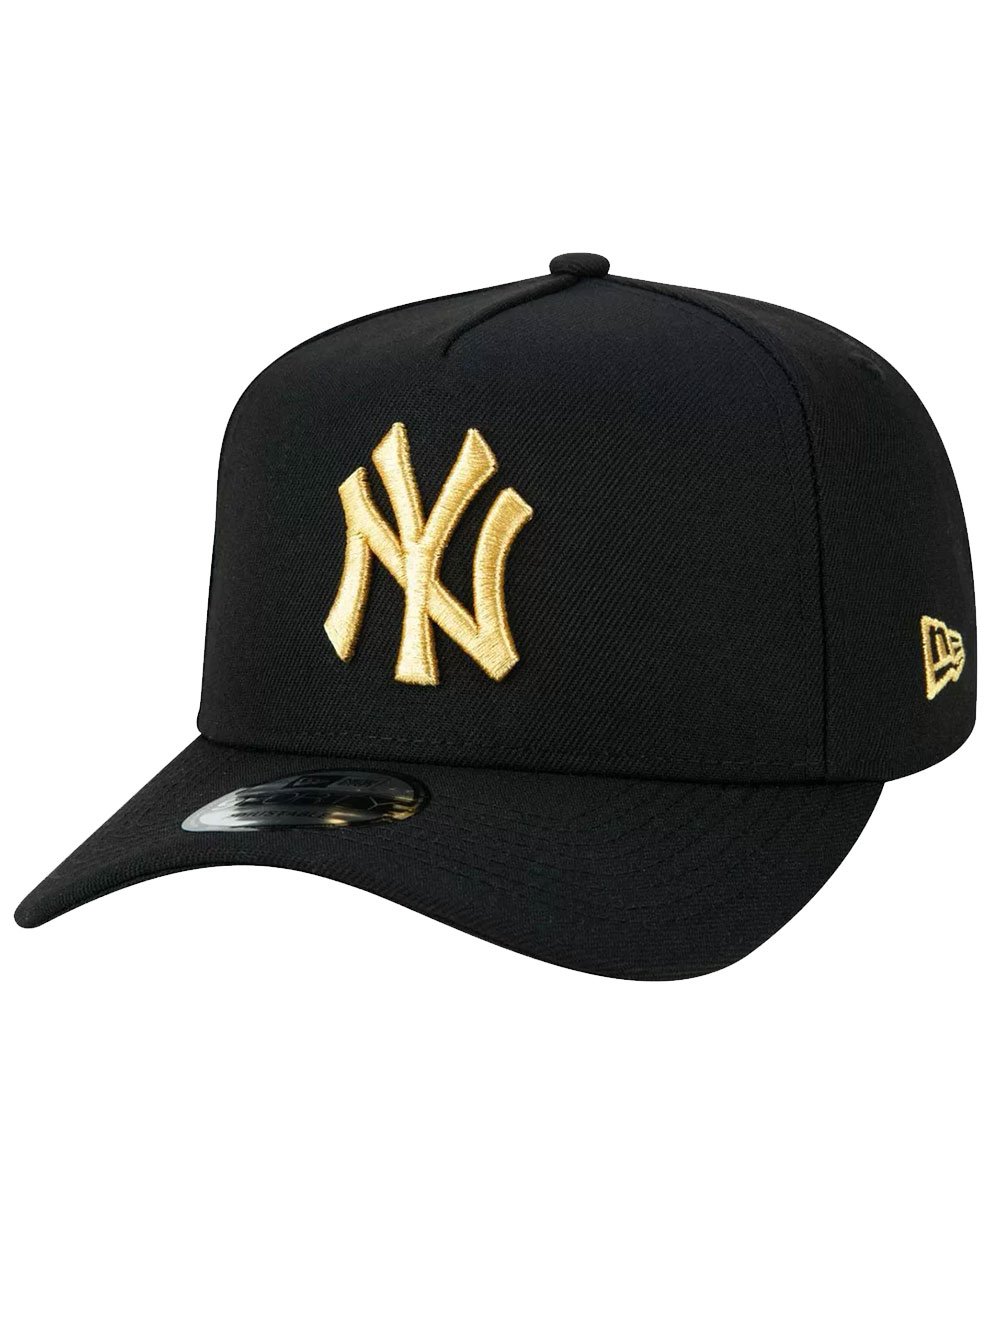 Boné New Era 9Forty MLB Yankees Veranito Gold Preto